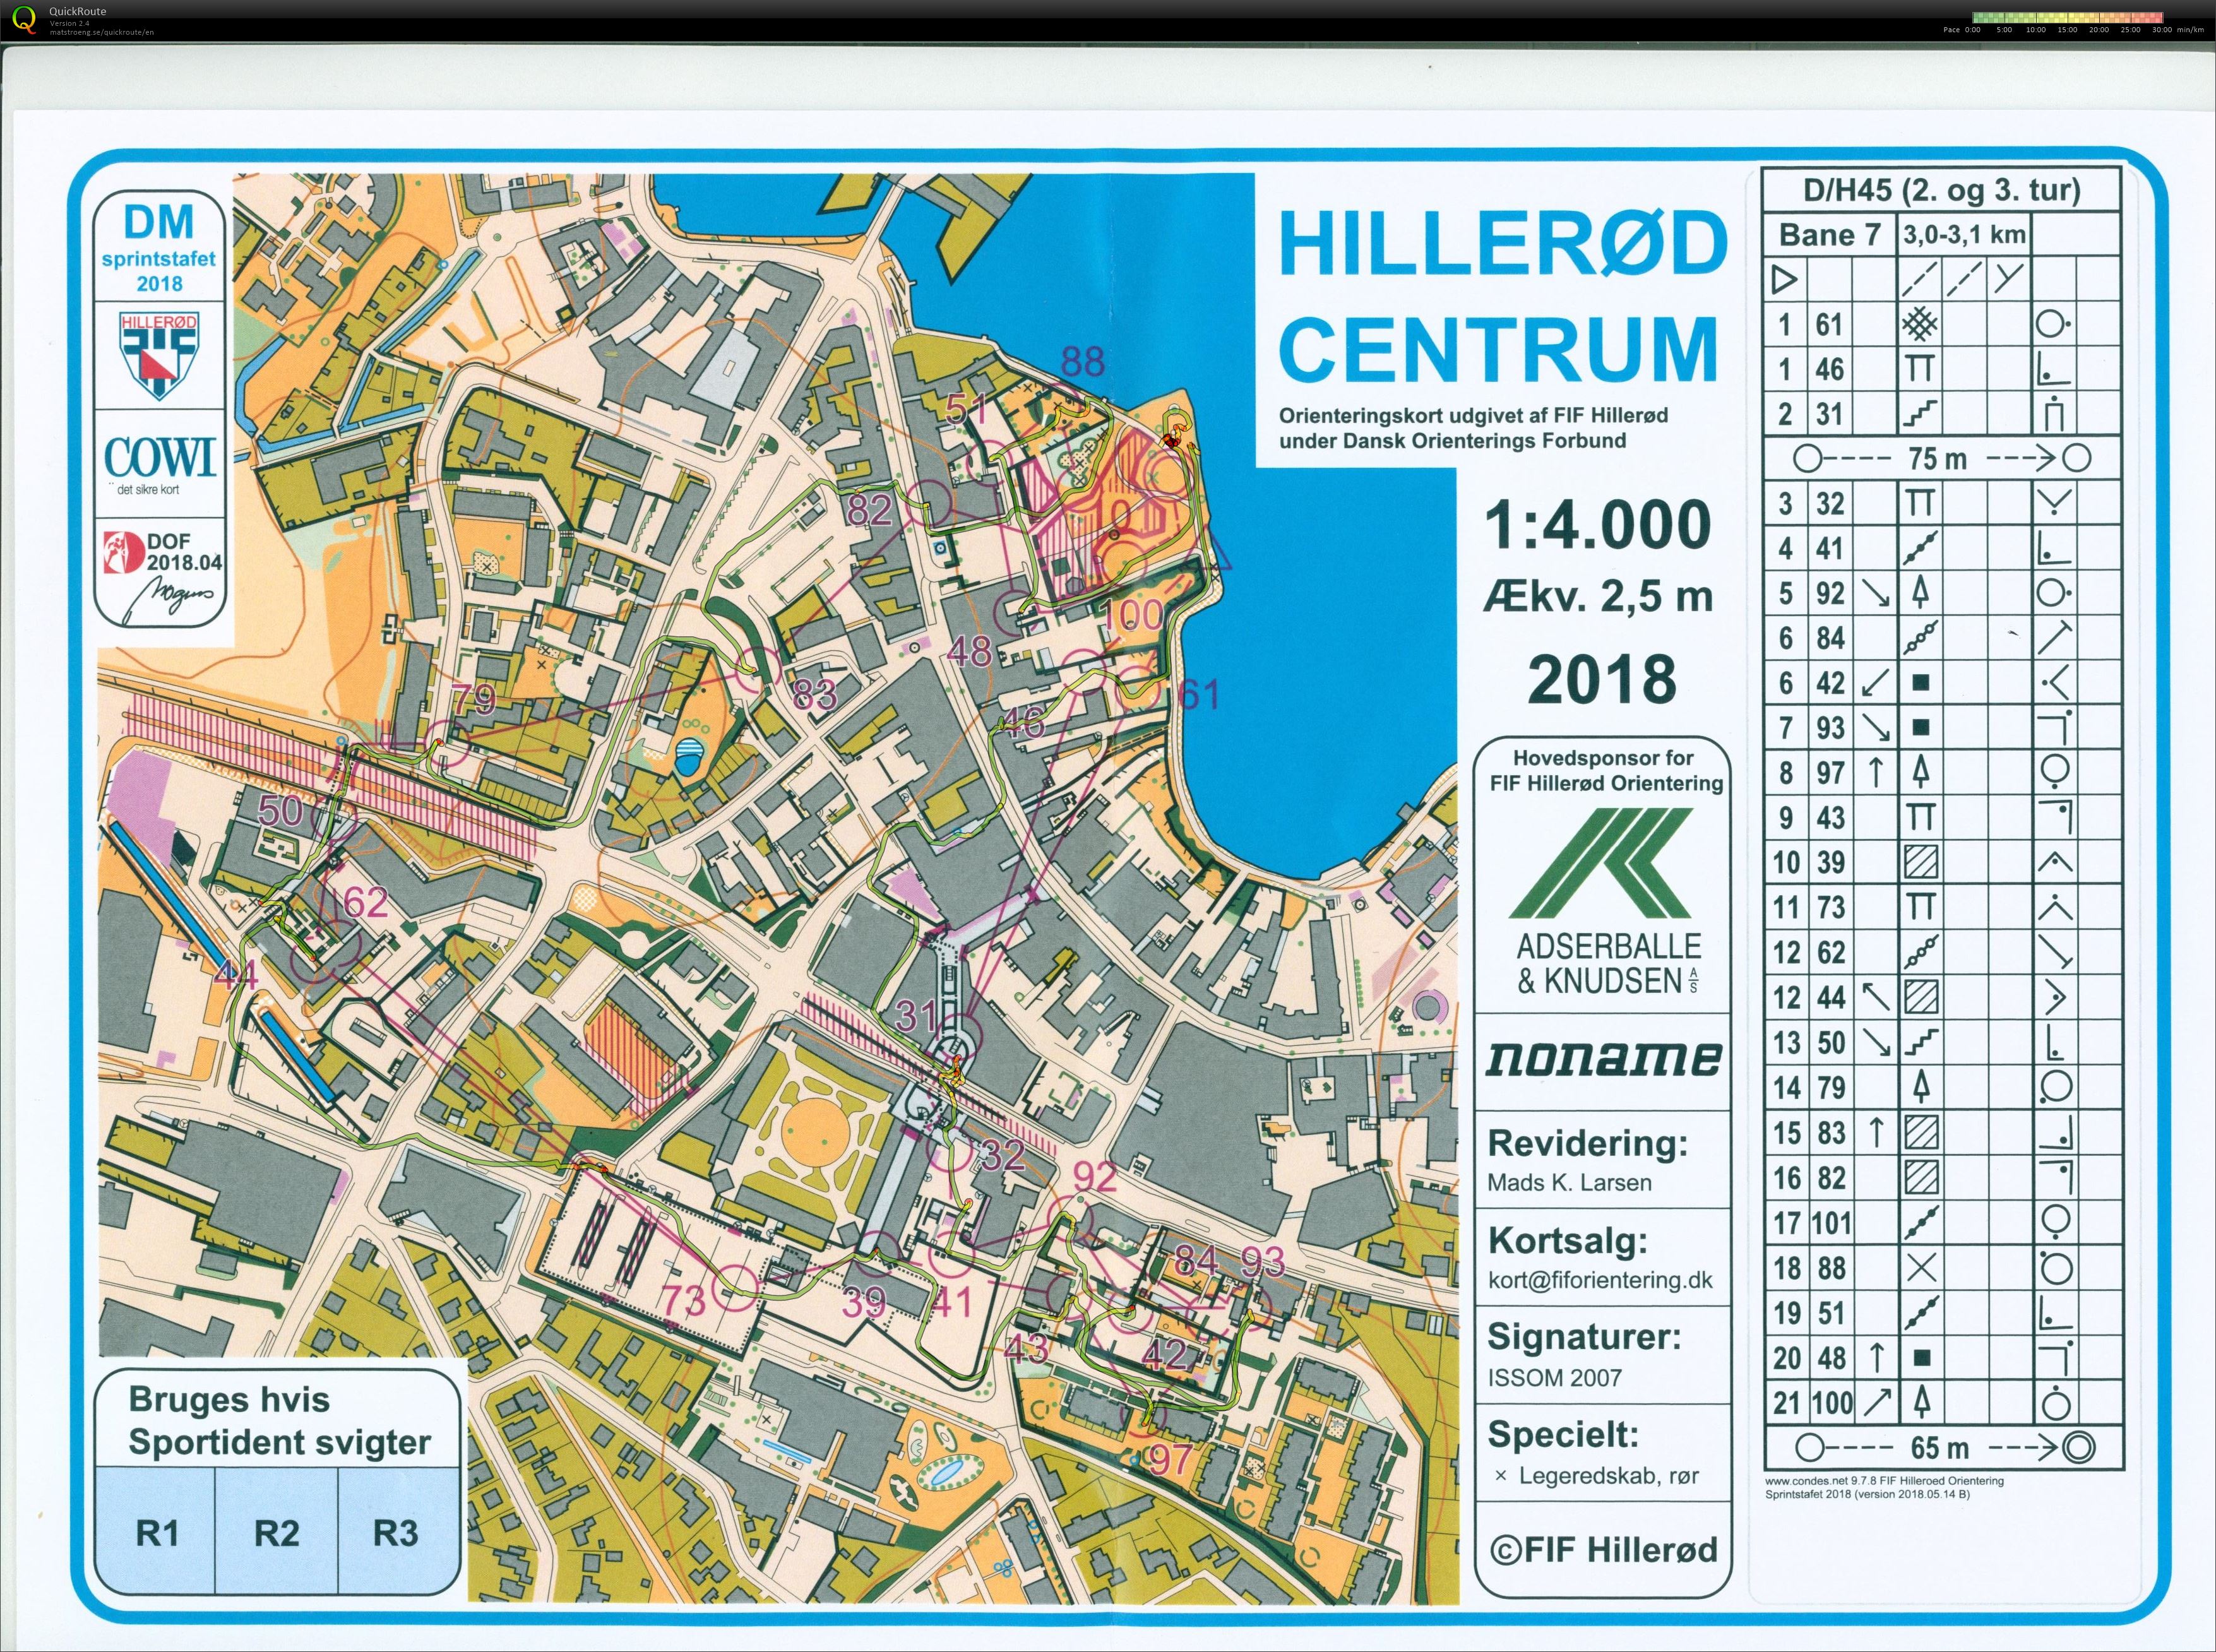 Hillerød sprint stafet D/H45 (27-05-2018)